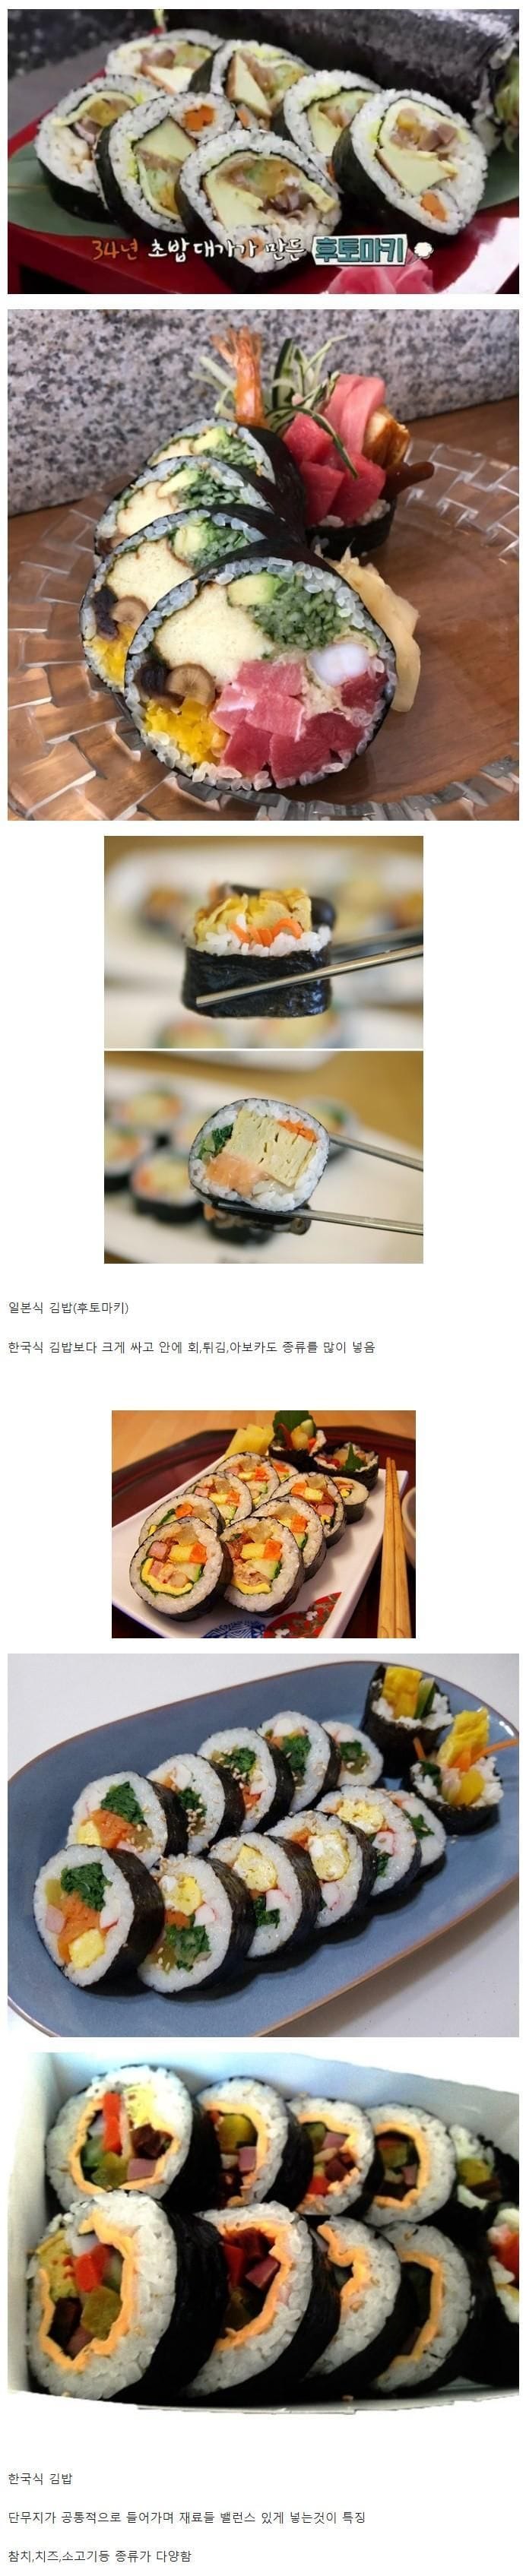 일본식 김밥 vs 한국식 김밥